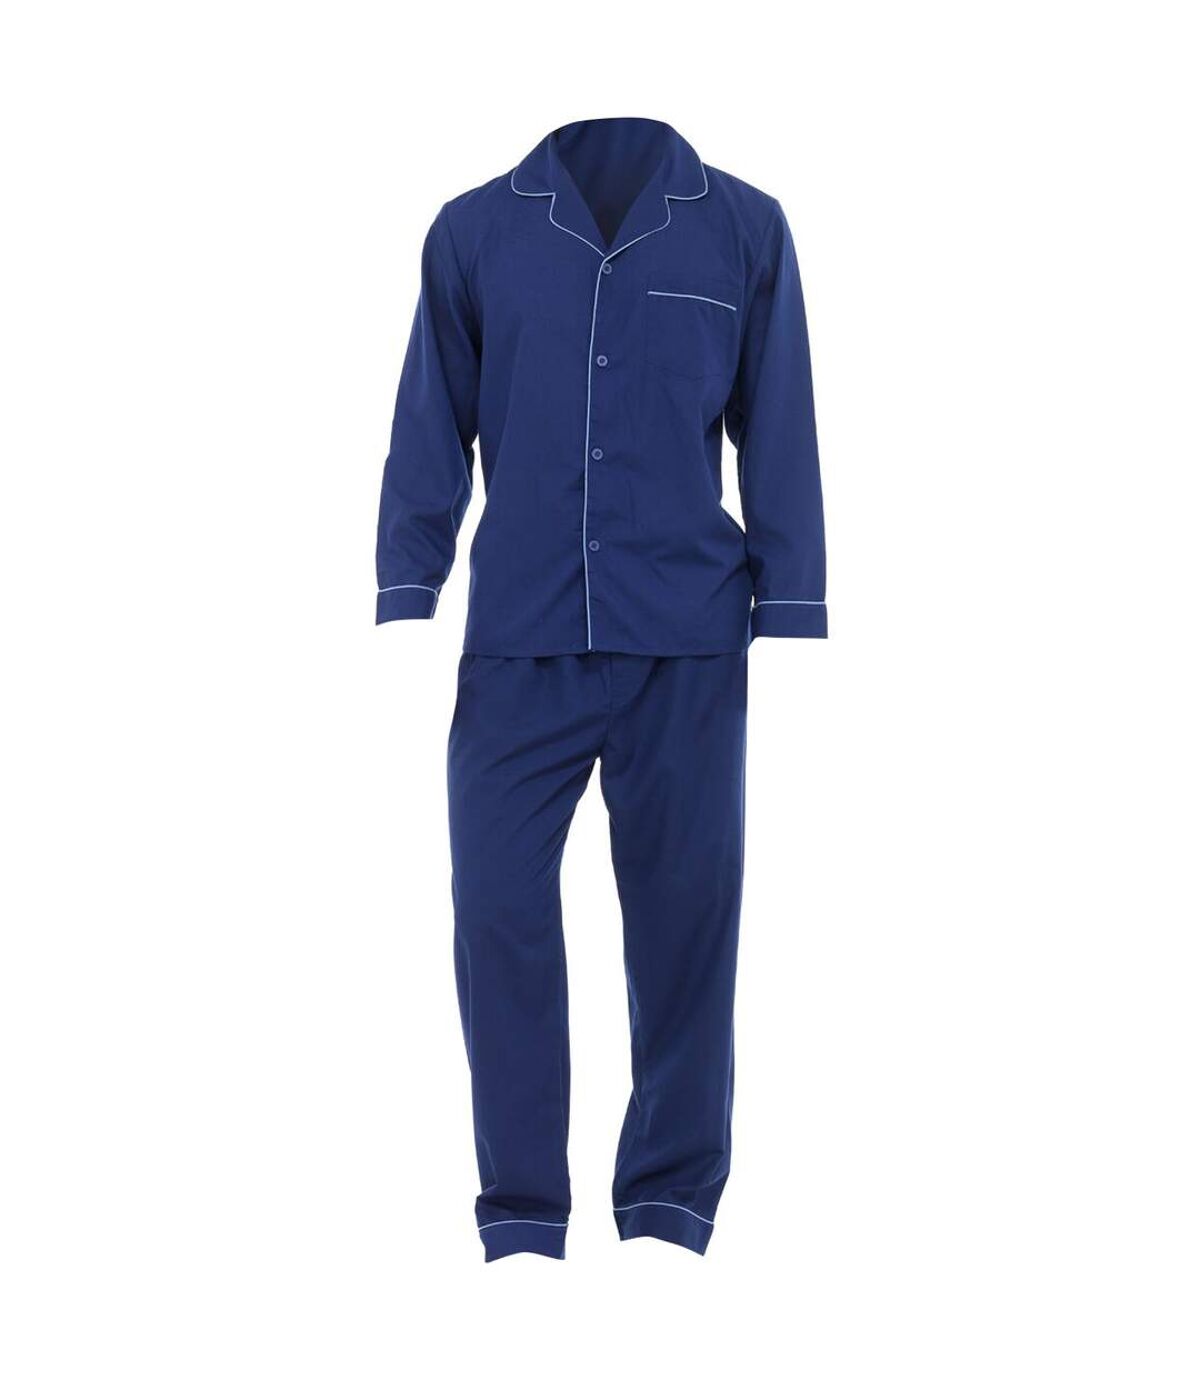 Pantalon et haut à manches longues de pyjama - Homme (Bleu marine) - UTN510